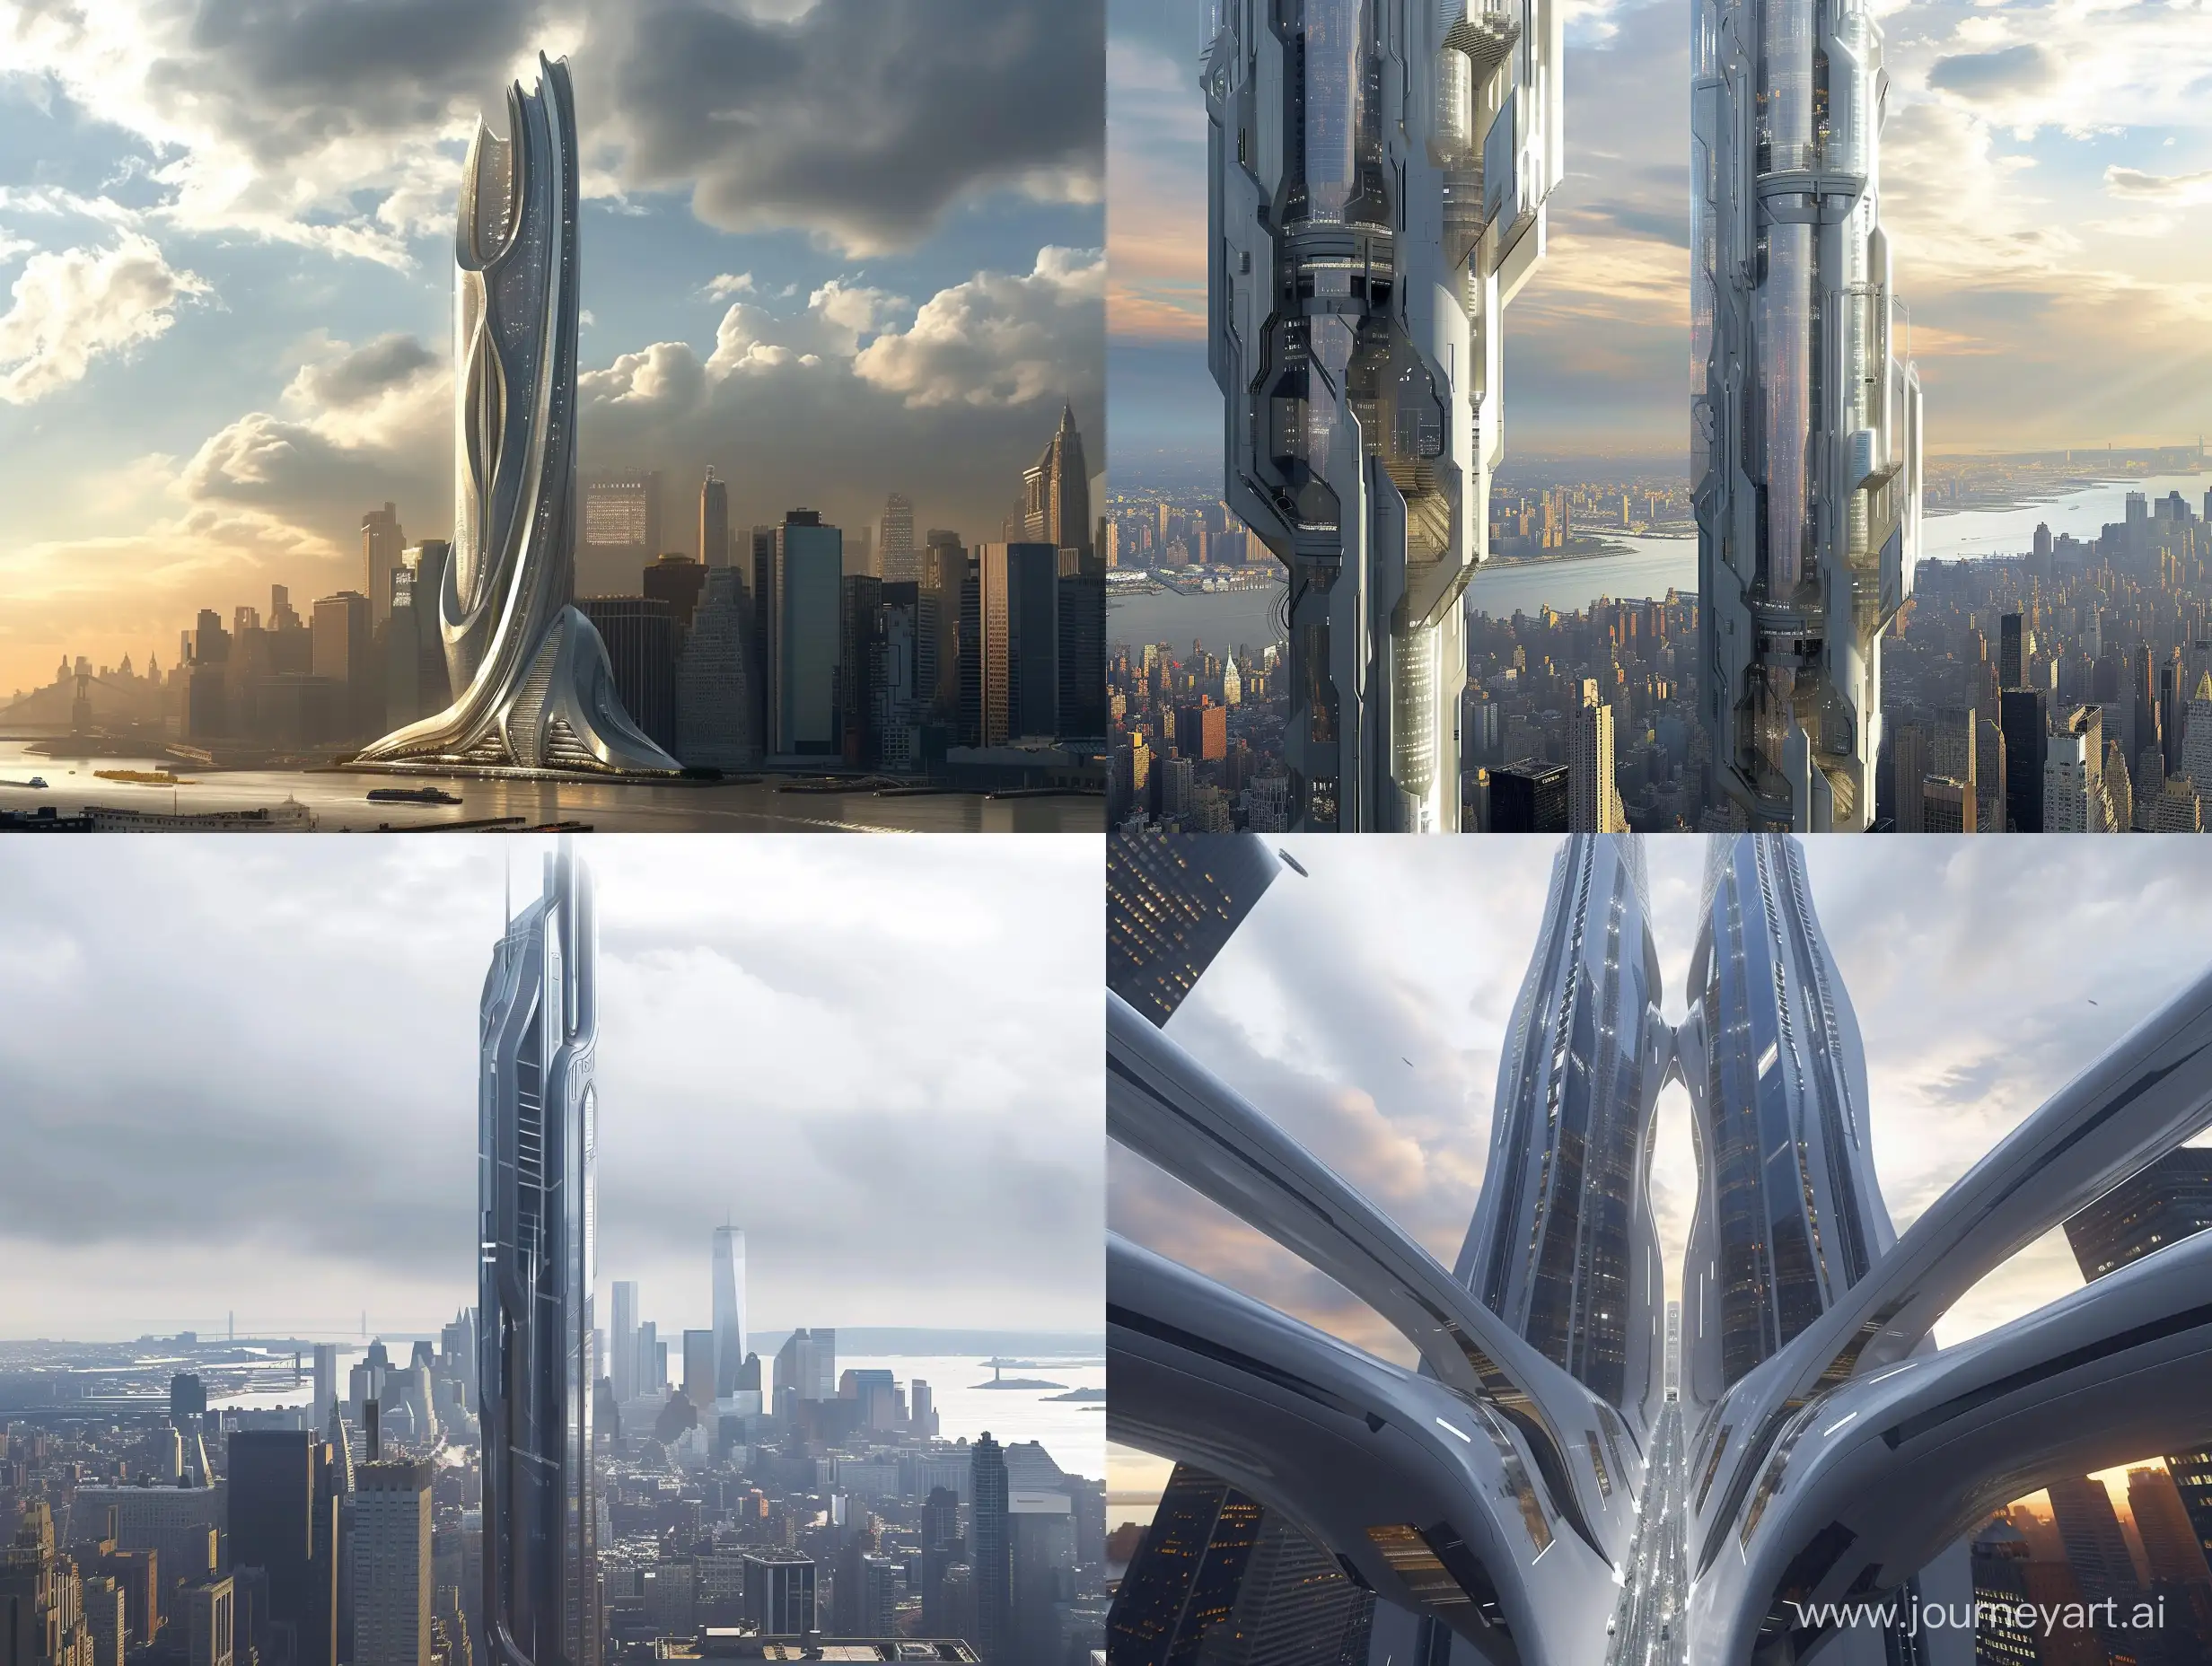 Futuristic-Skyscraper-Design-for-New-York-City-Modern-Architectural-Marvel